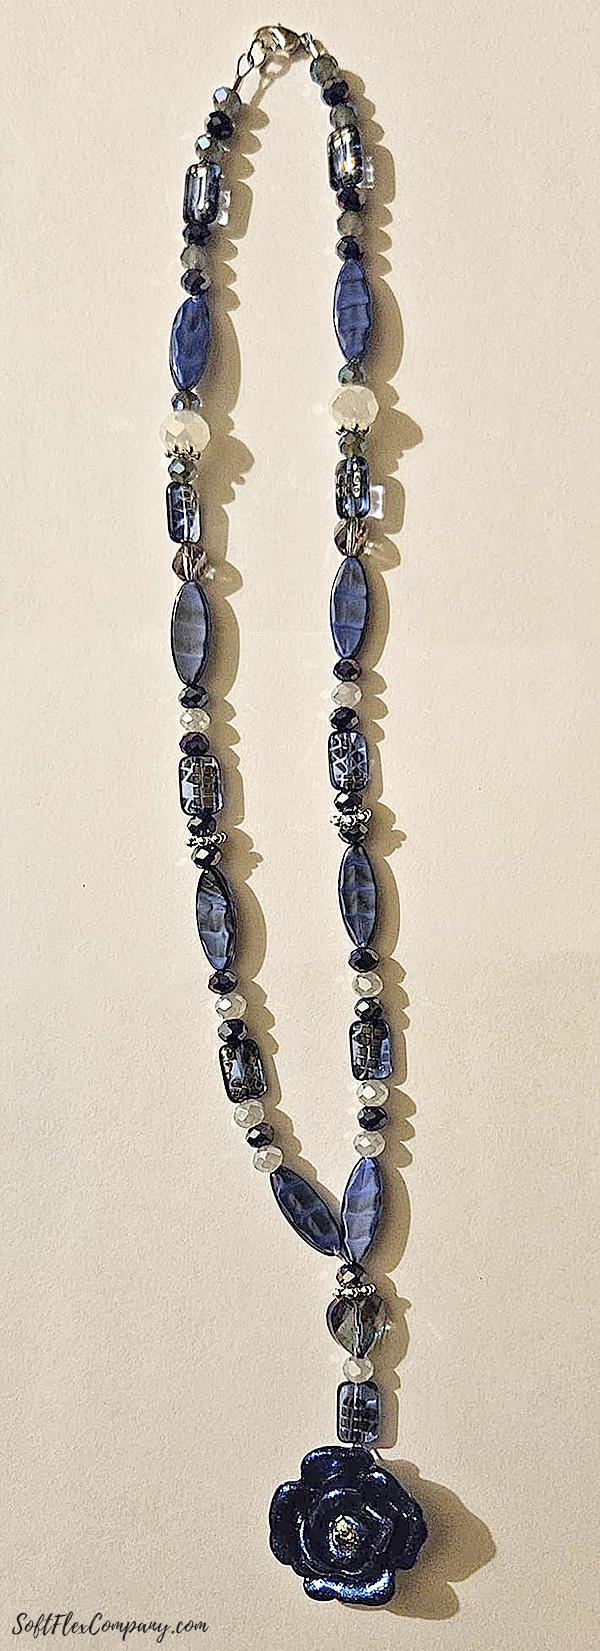 Rainy Day Blues Jewelry Design by Anne Nishioka